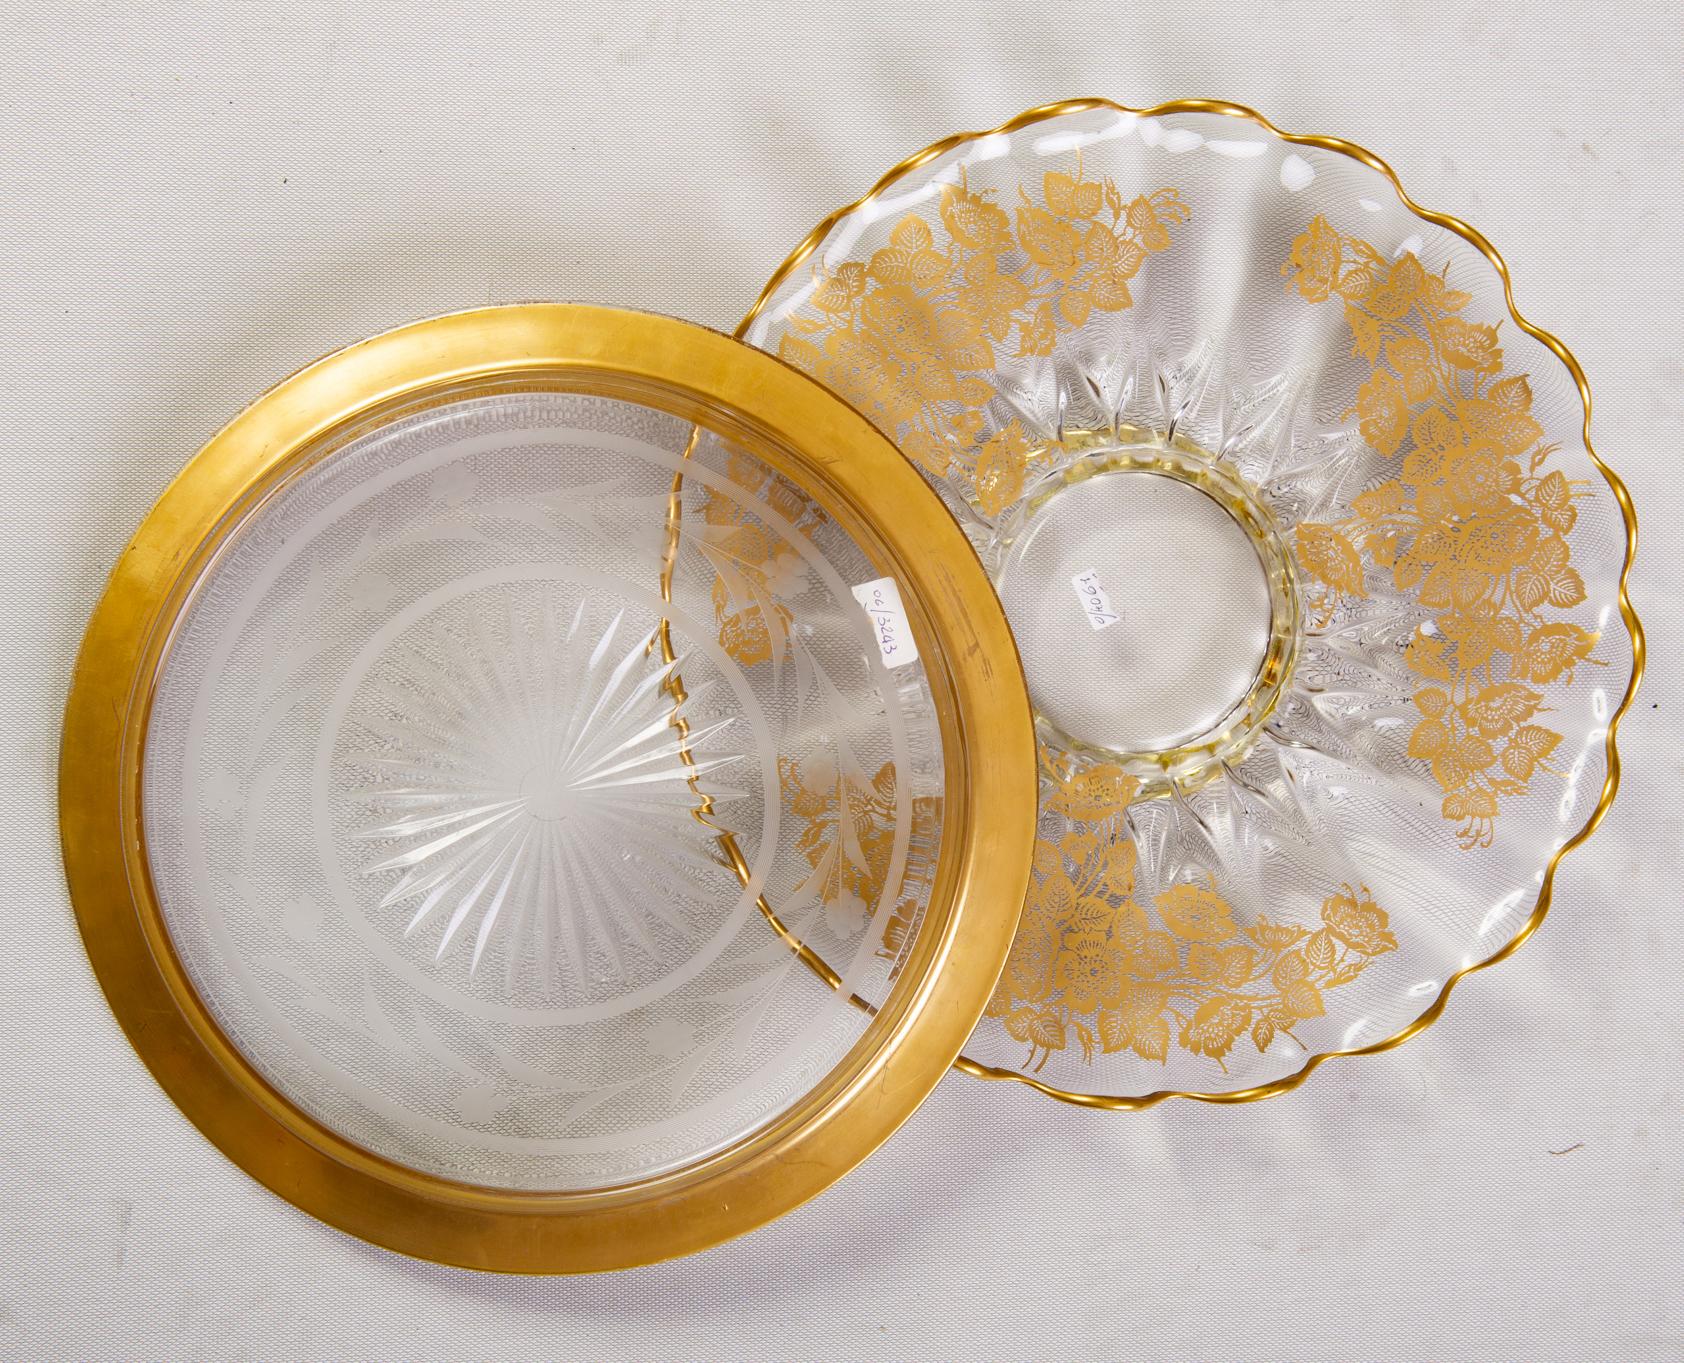 Magnifiques assiettes de centre de table en verre plaqué or, datant des années 1950 environ.
Ce sont de jolis objets qui peuvent être utilisés comme couverts sur votre table.
Le prix intéressant est le même : avec ou sans fleurs : Je ferme mes